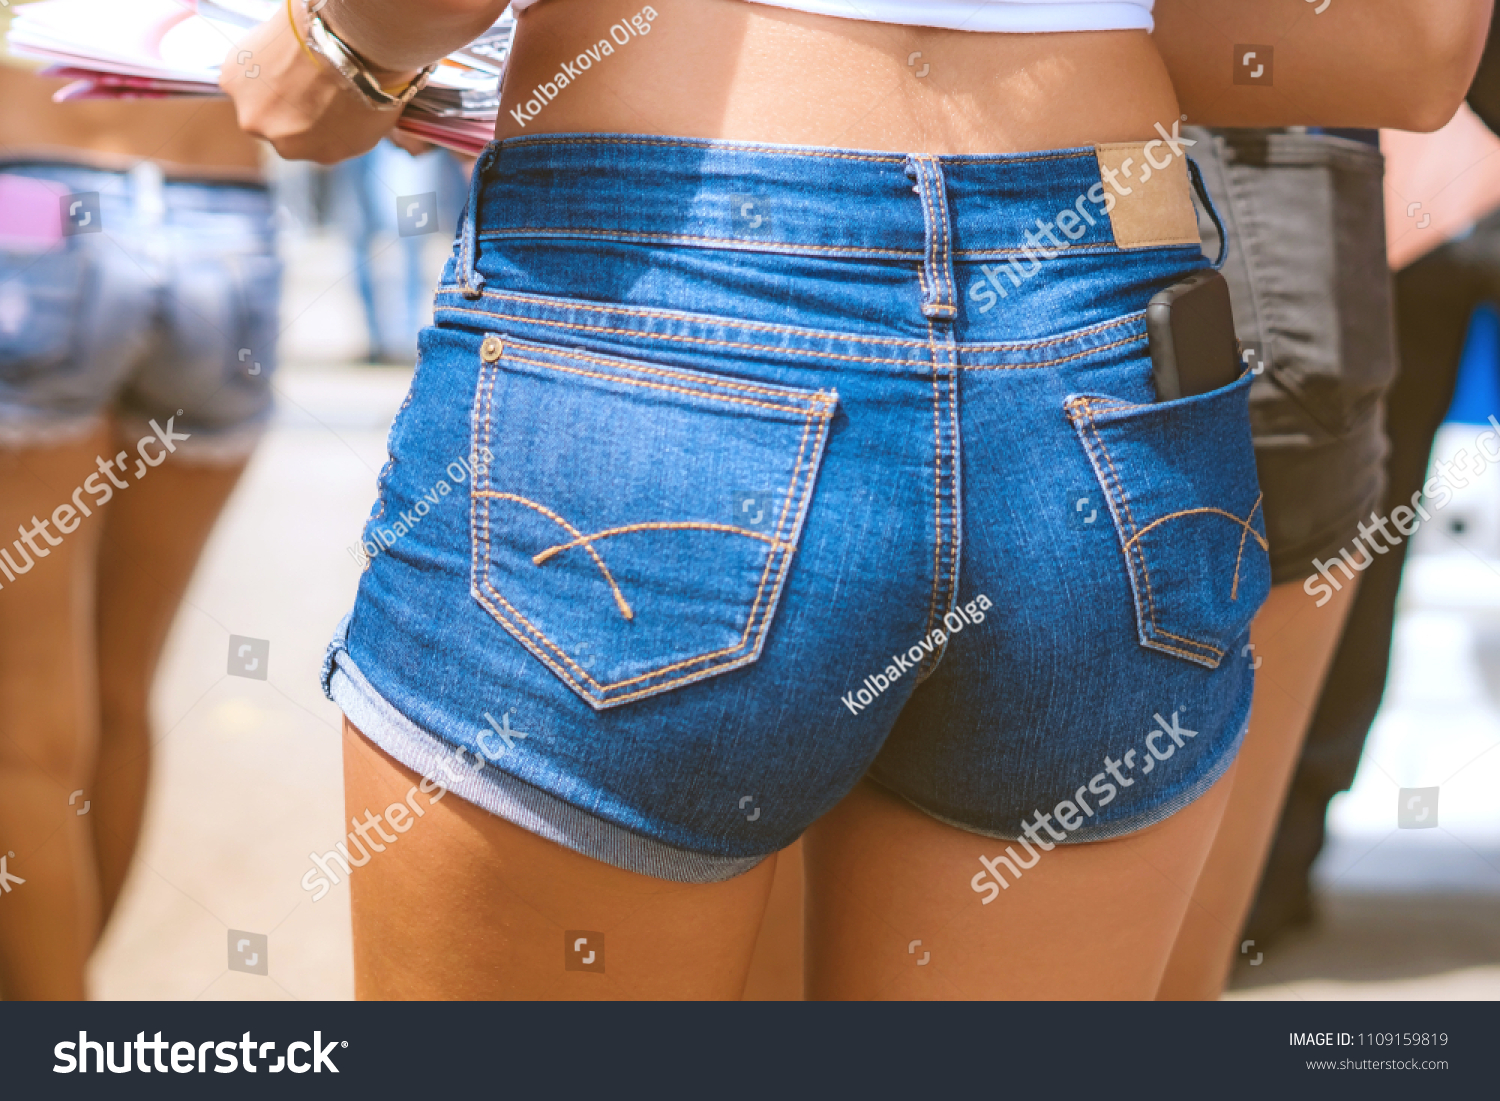 Ass In Short Shorts